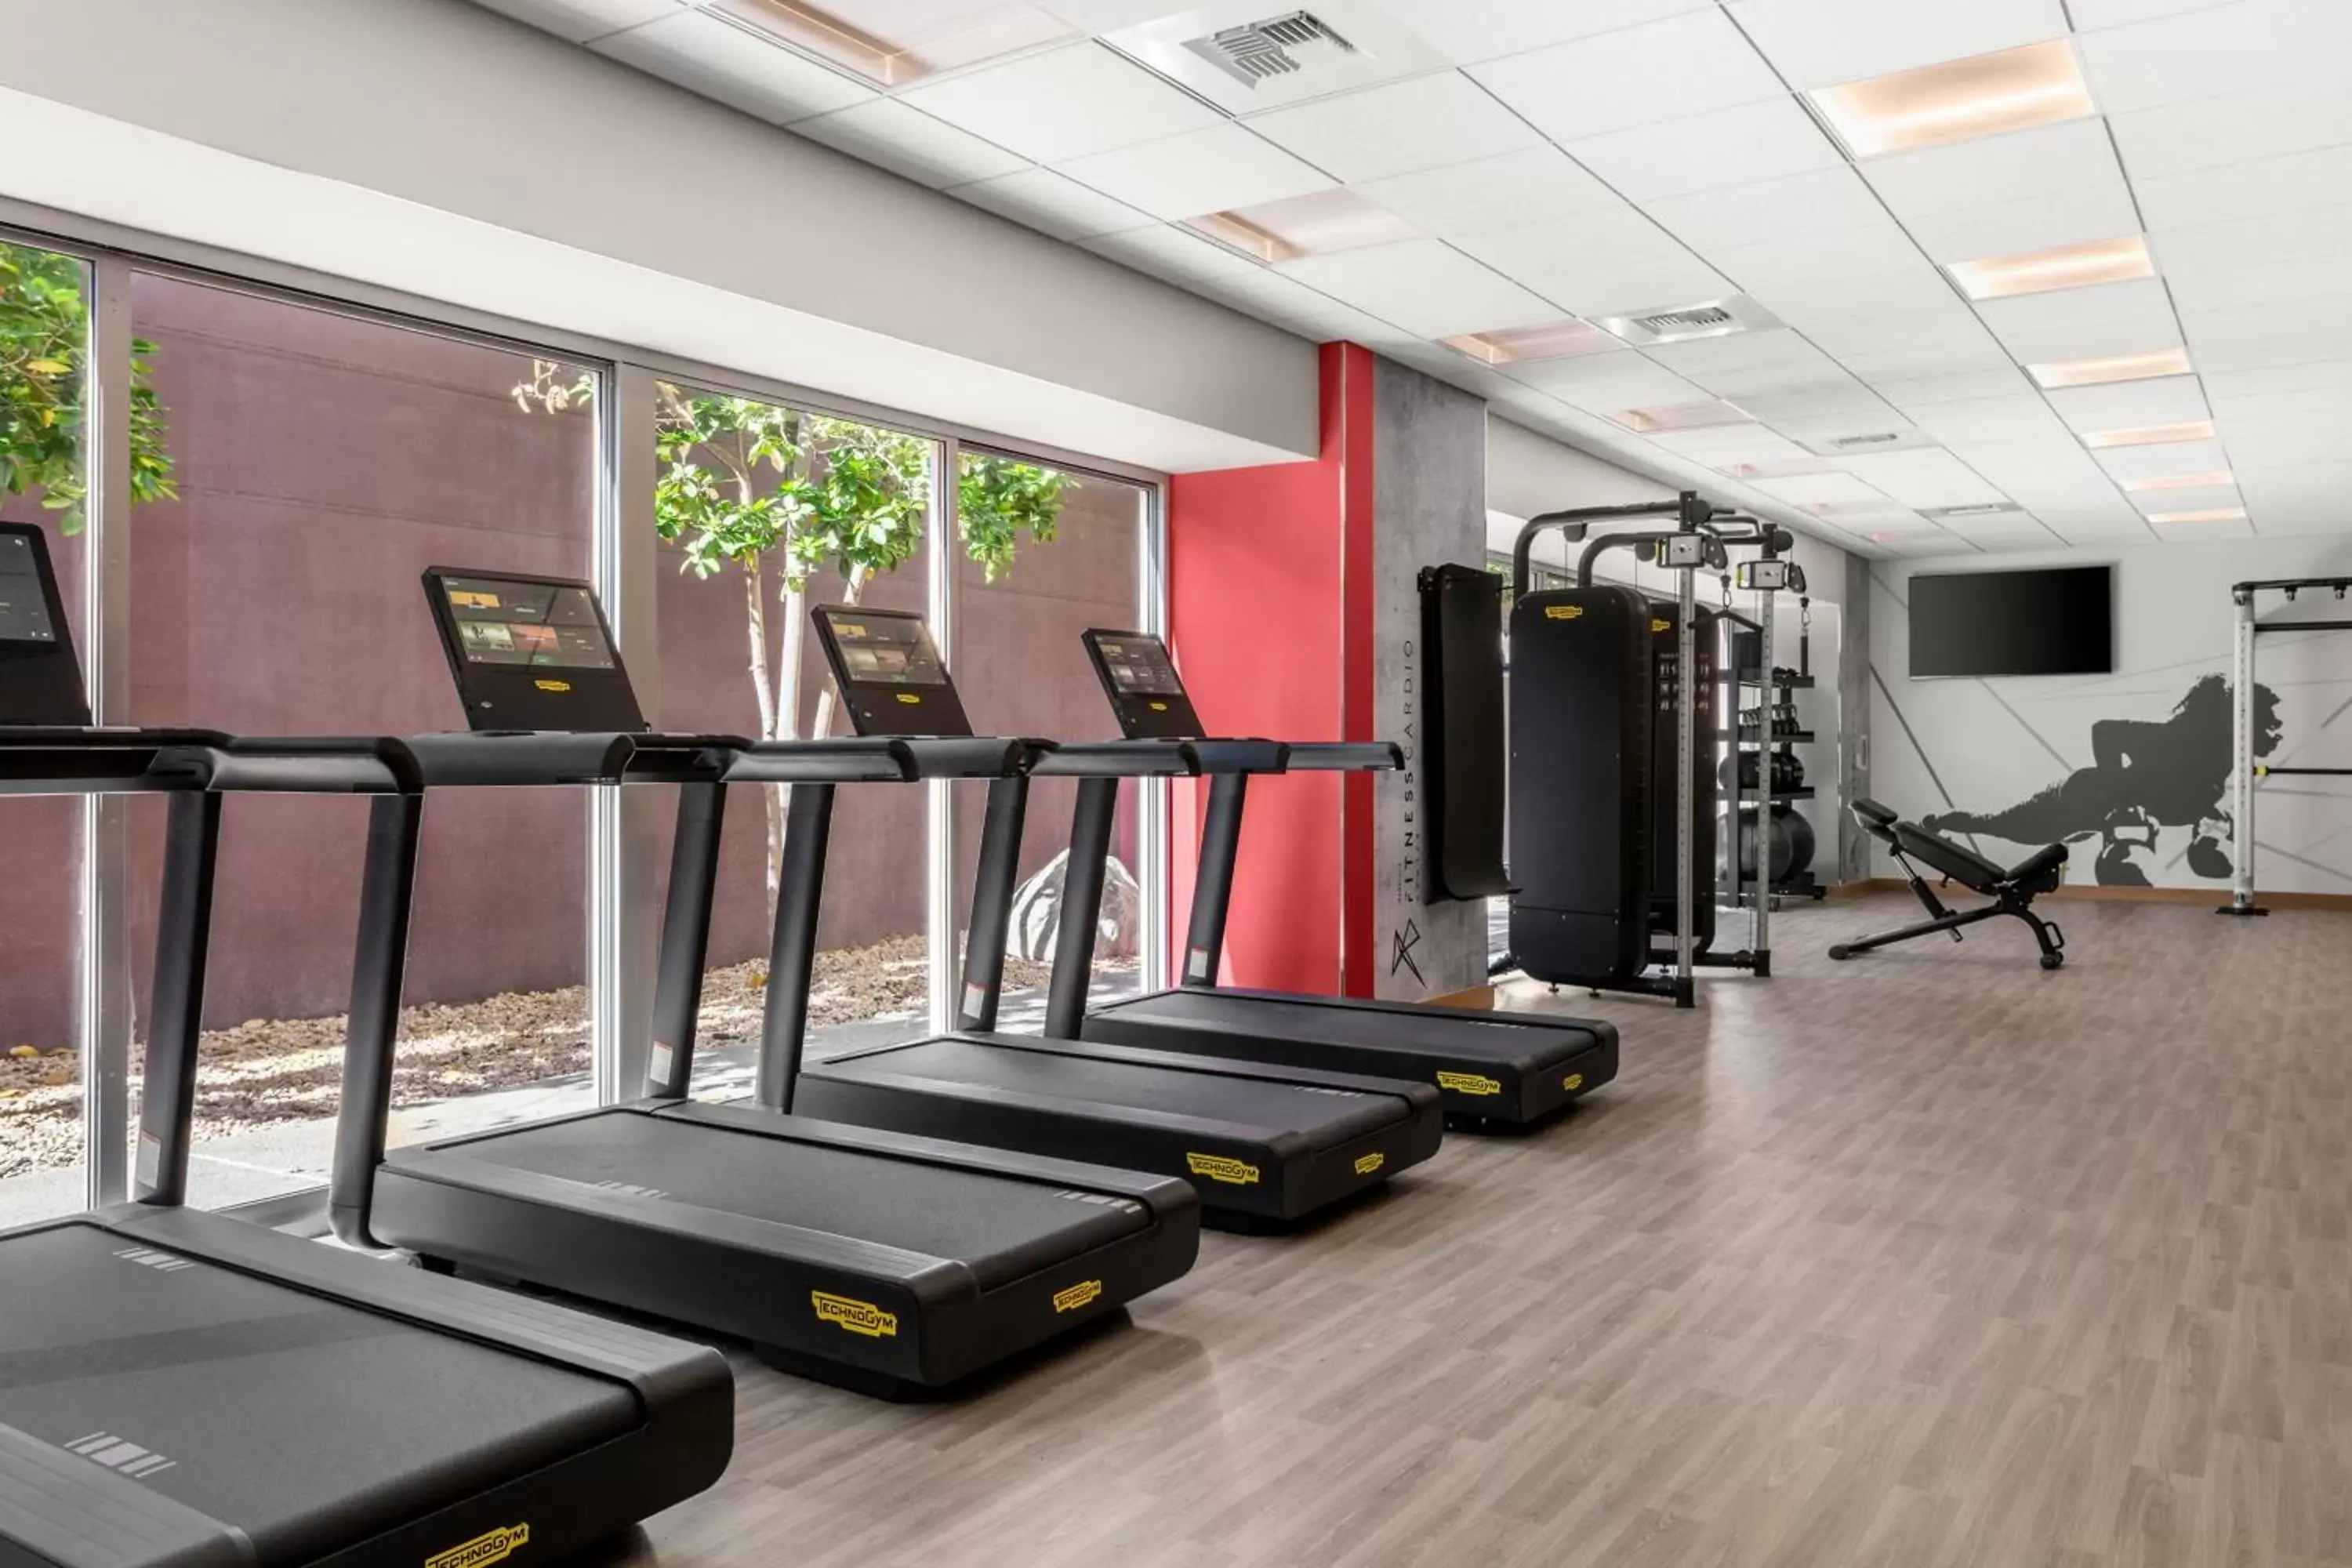 Fitness centre/facilities, Fitness Center/Facilities in Marina del Rey Marriott